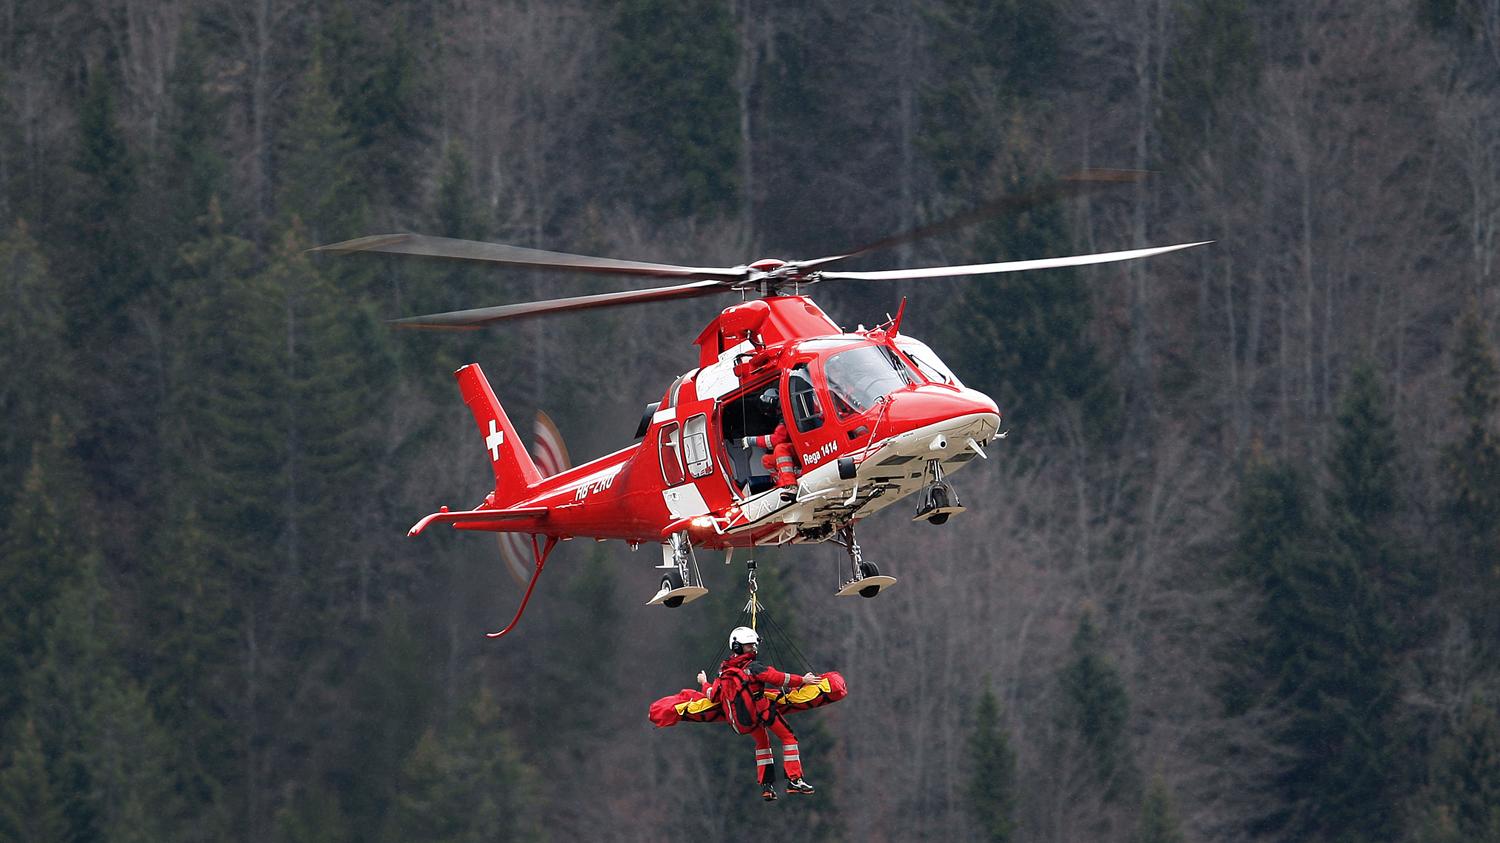 A Rega egyik mentőhelikoptere munka közben (Képünk illusztráció)